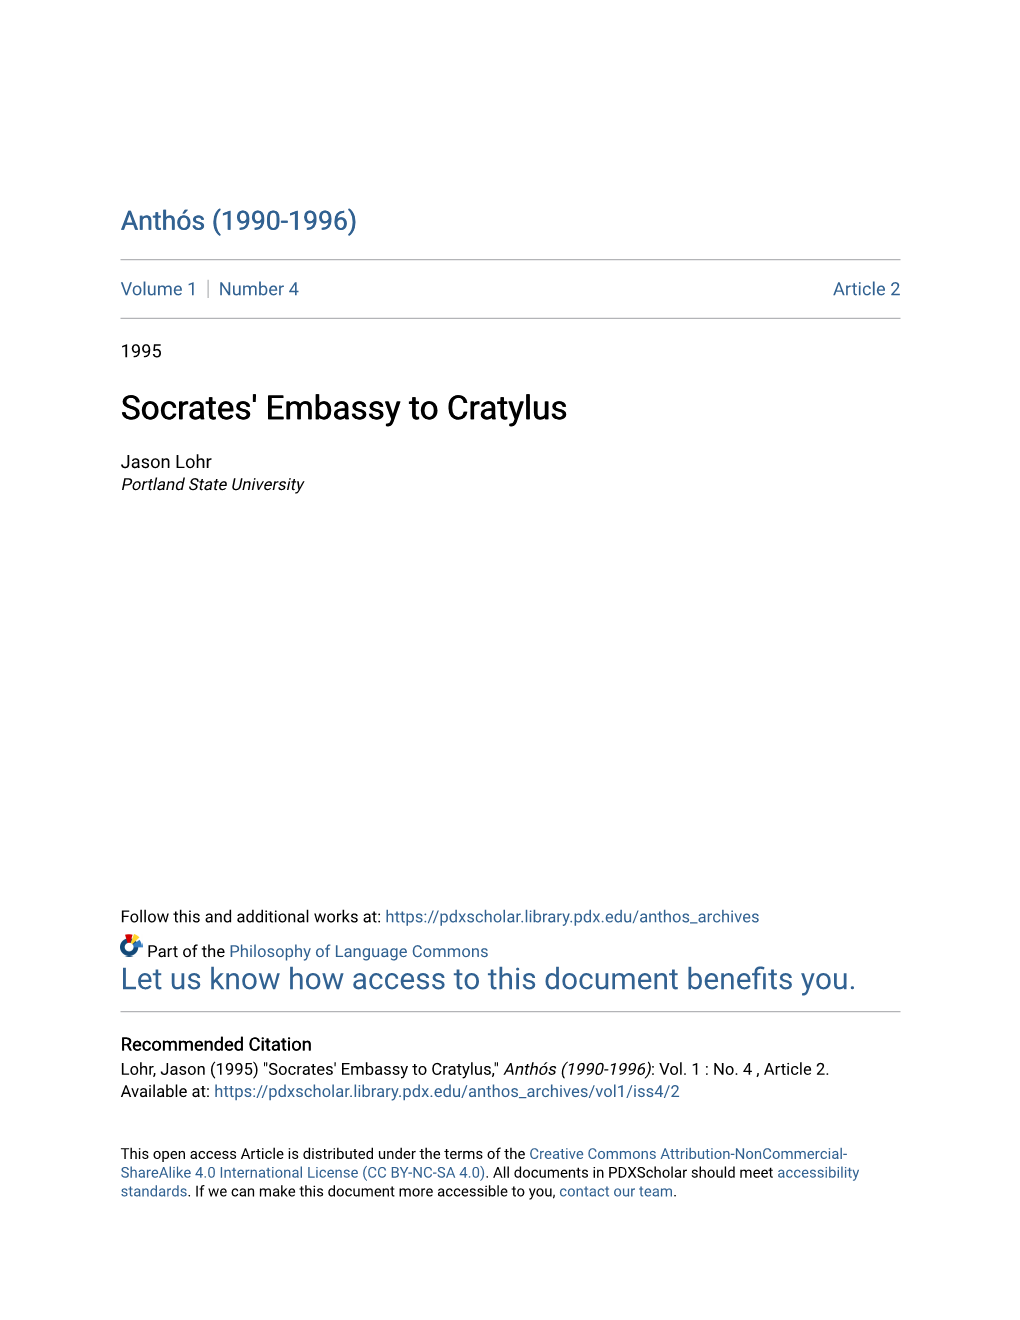 Socrates' Embassy to Cratylus